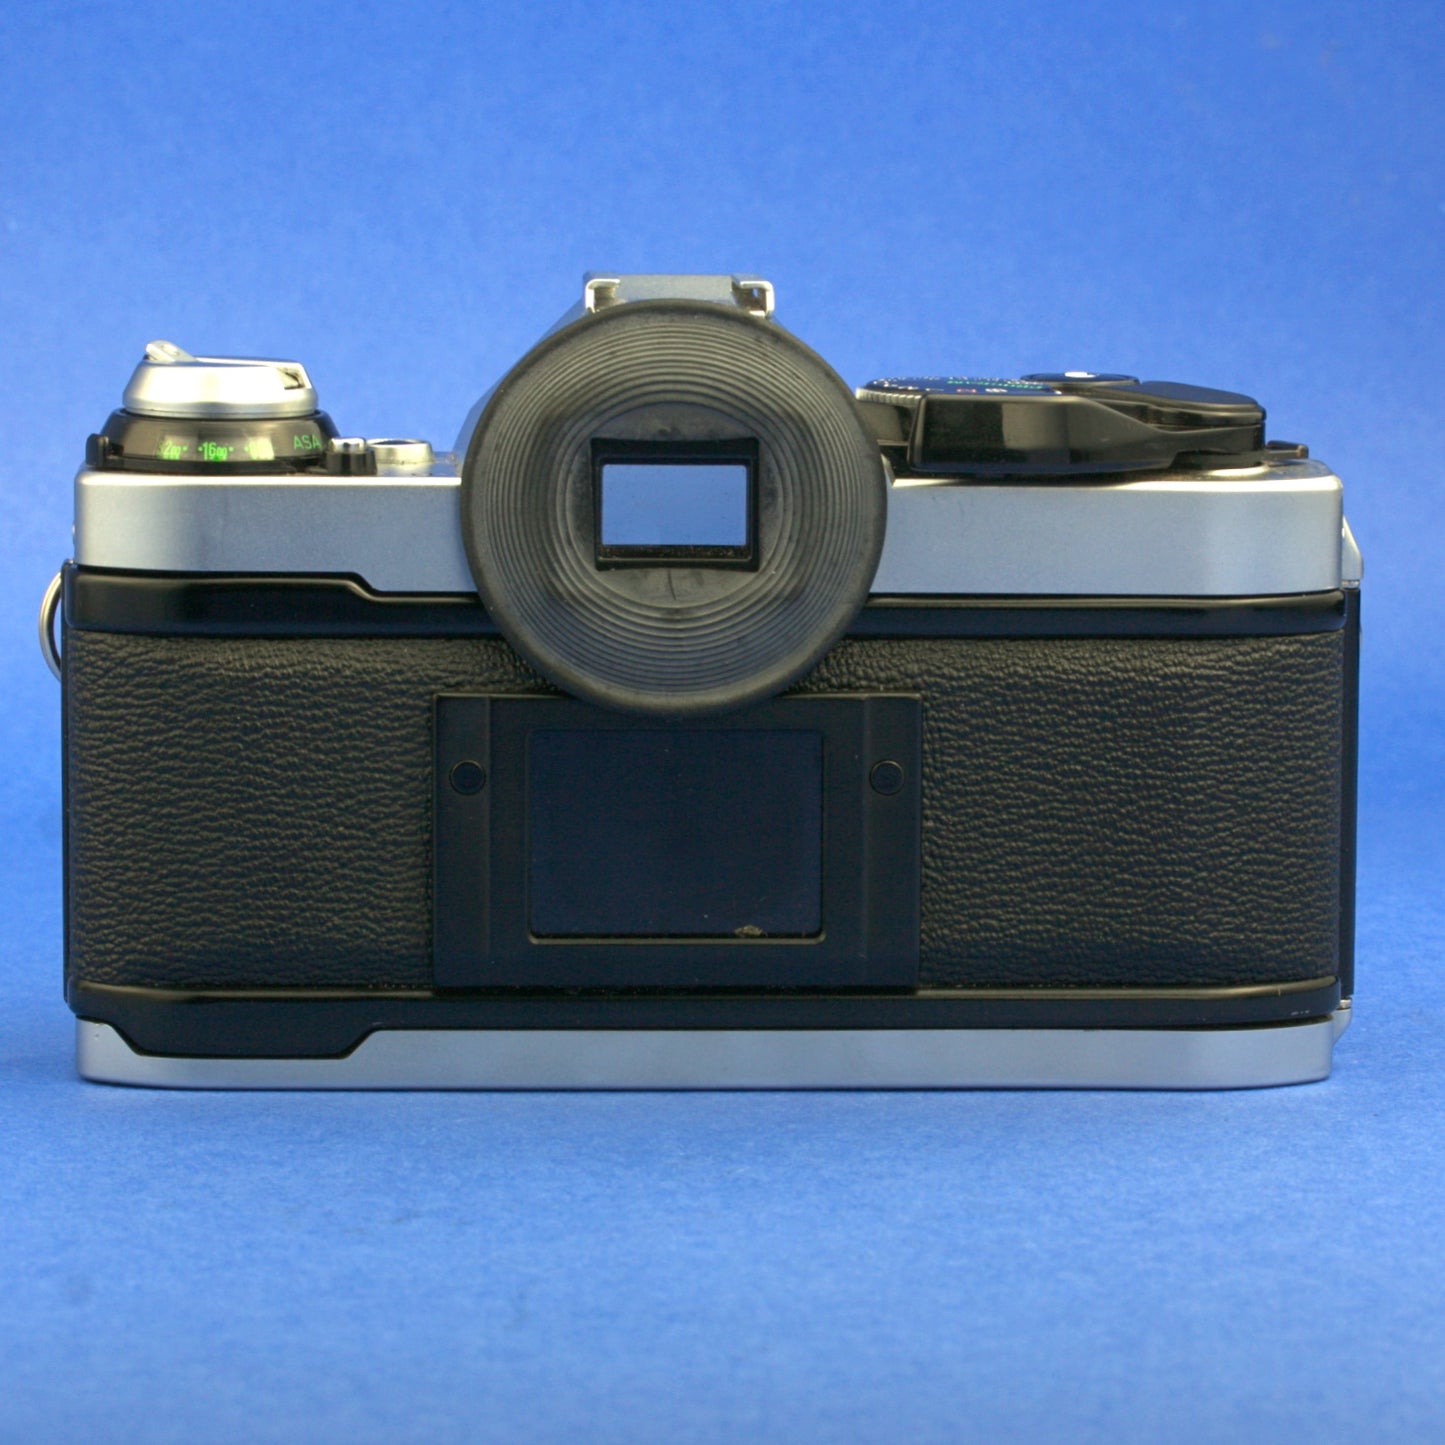 Canon AE-1 Program Film Camera Body Beautiful Condition